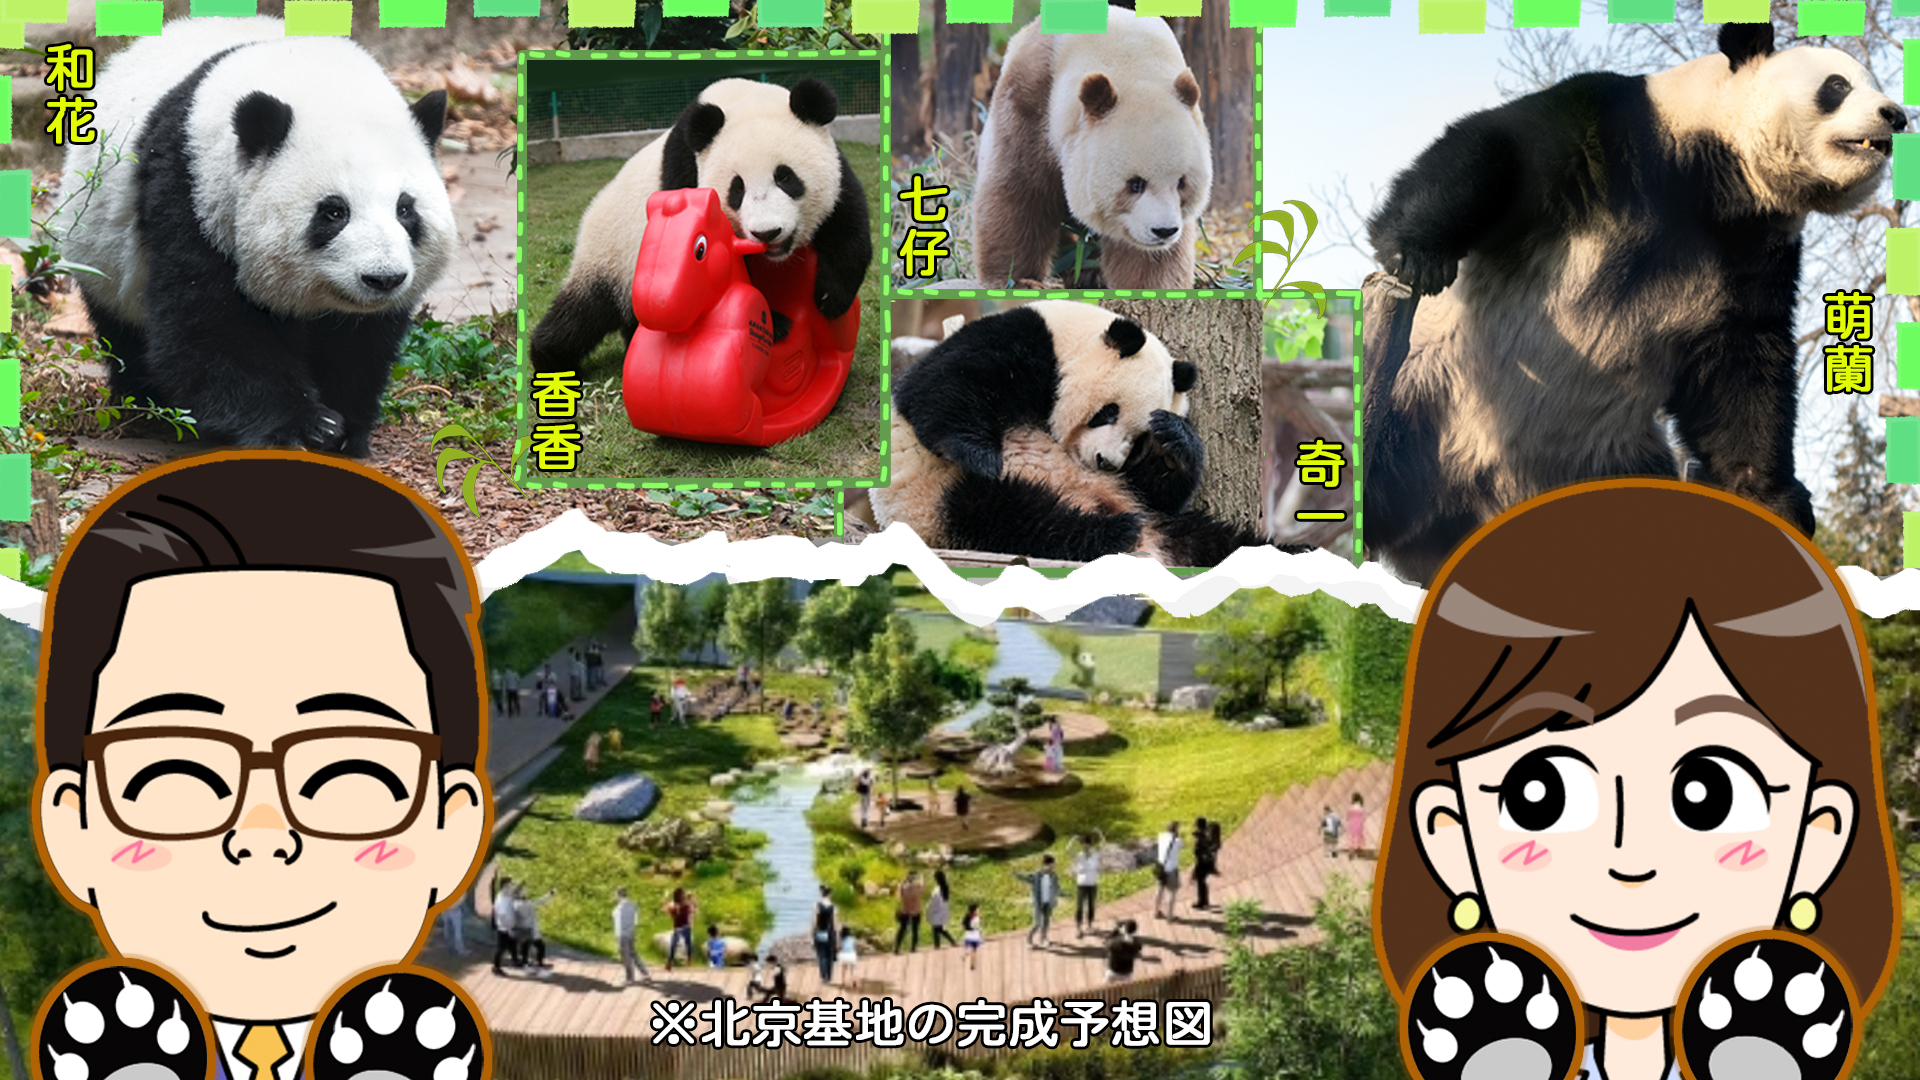 北京にパンダ40頭がやって来る 中国人もパンダが大好き！【わかった気になっチャイナ】